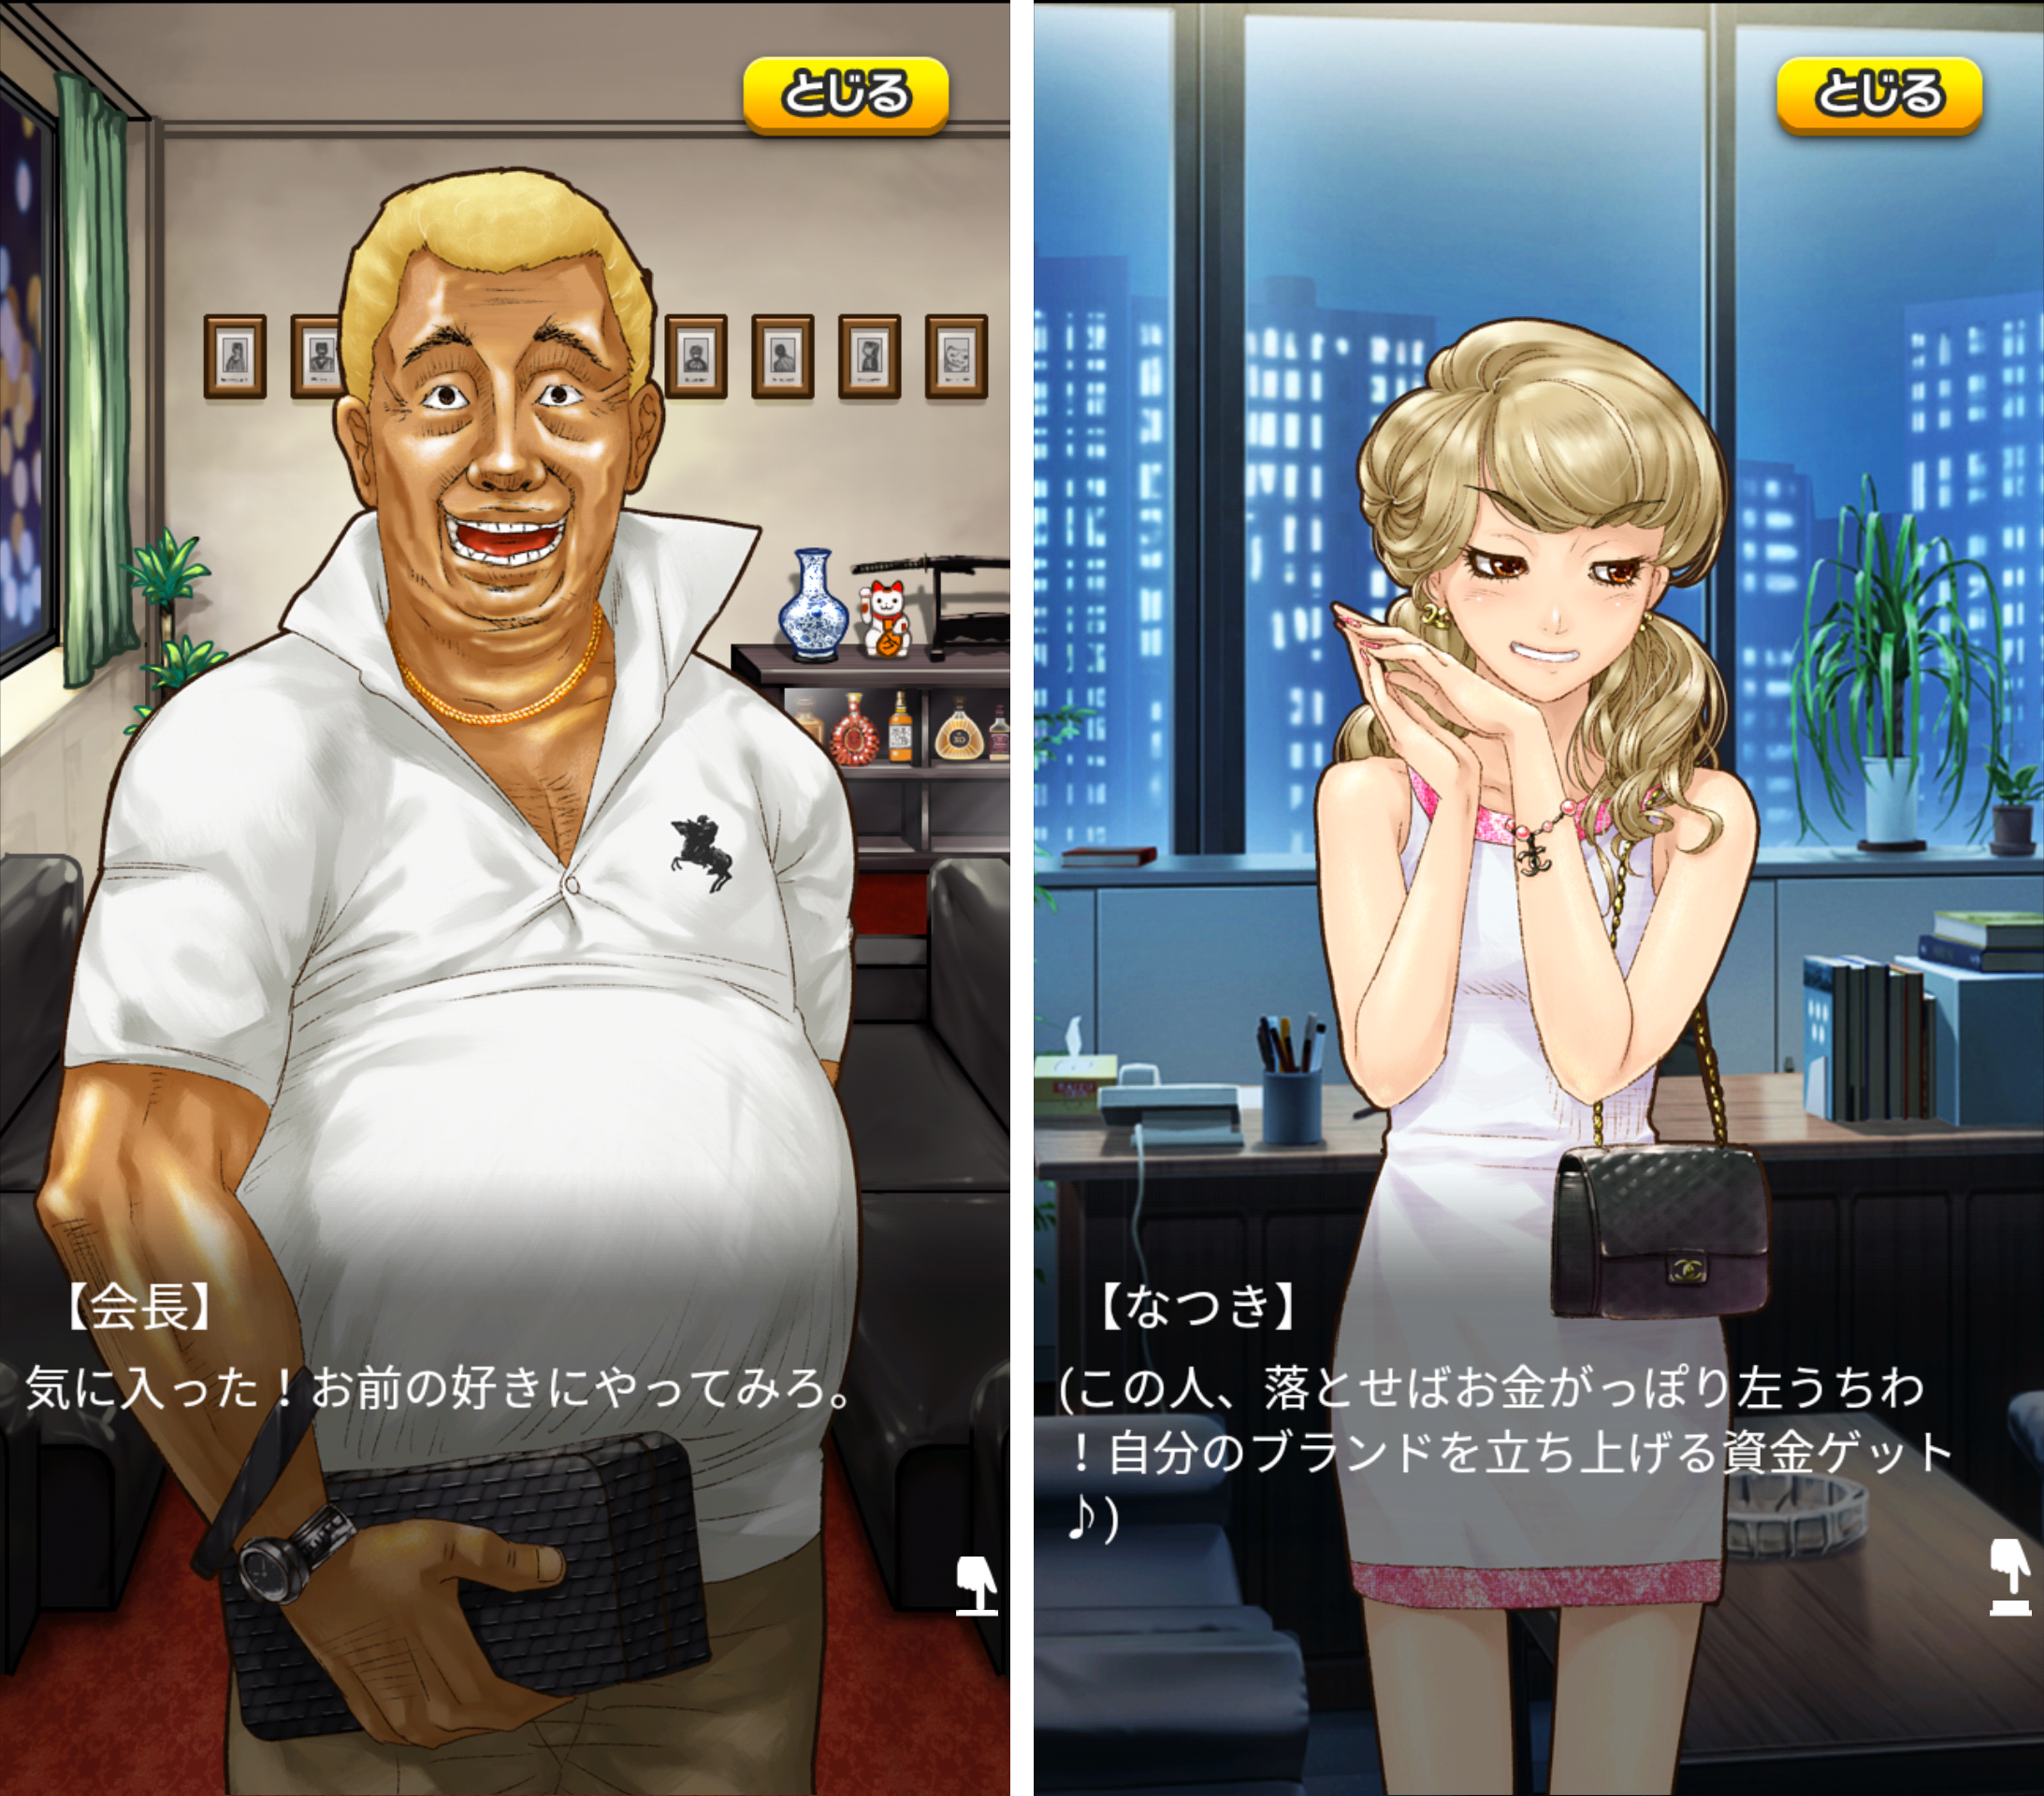 欲望が渦巻く街「歌舞伎町タワー」 androidアプリスクリーンショット2